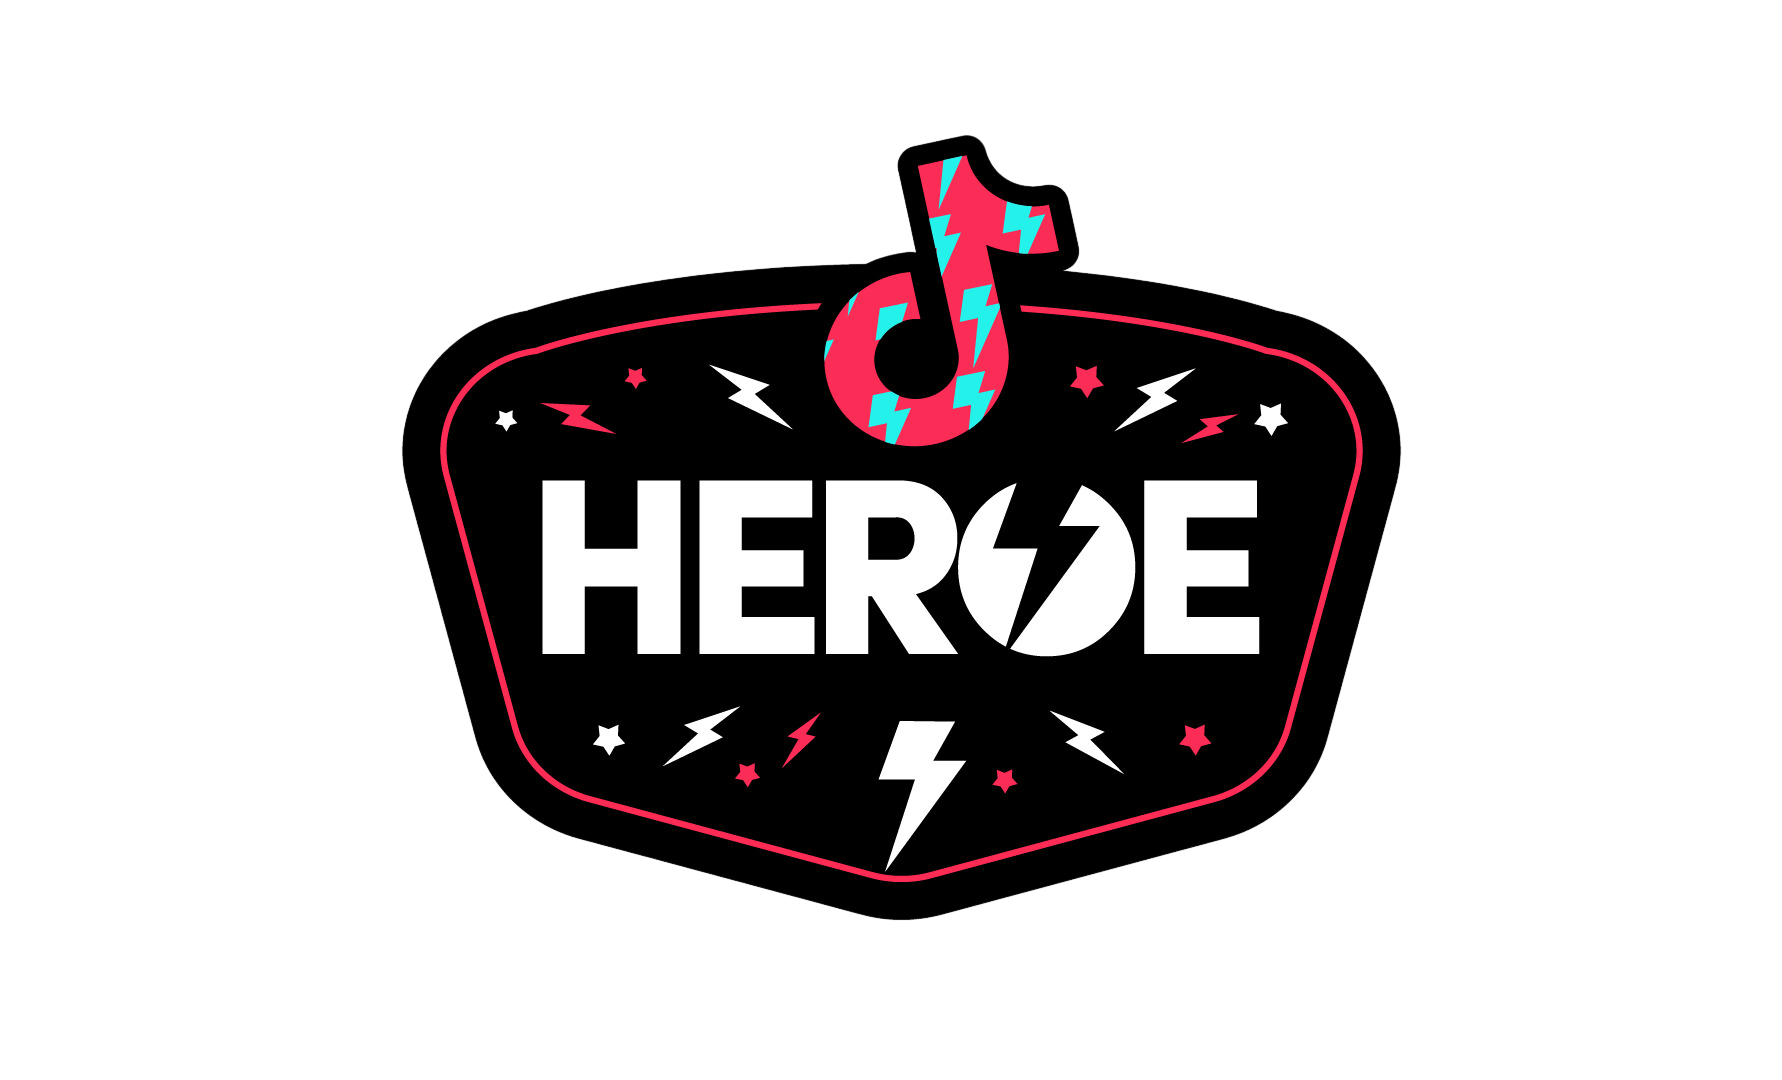 Heroes badge